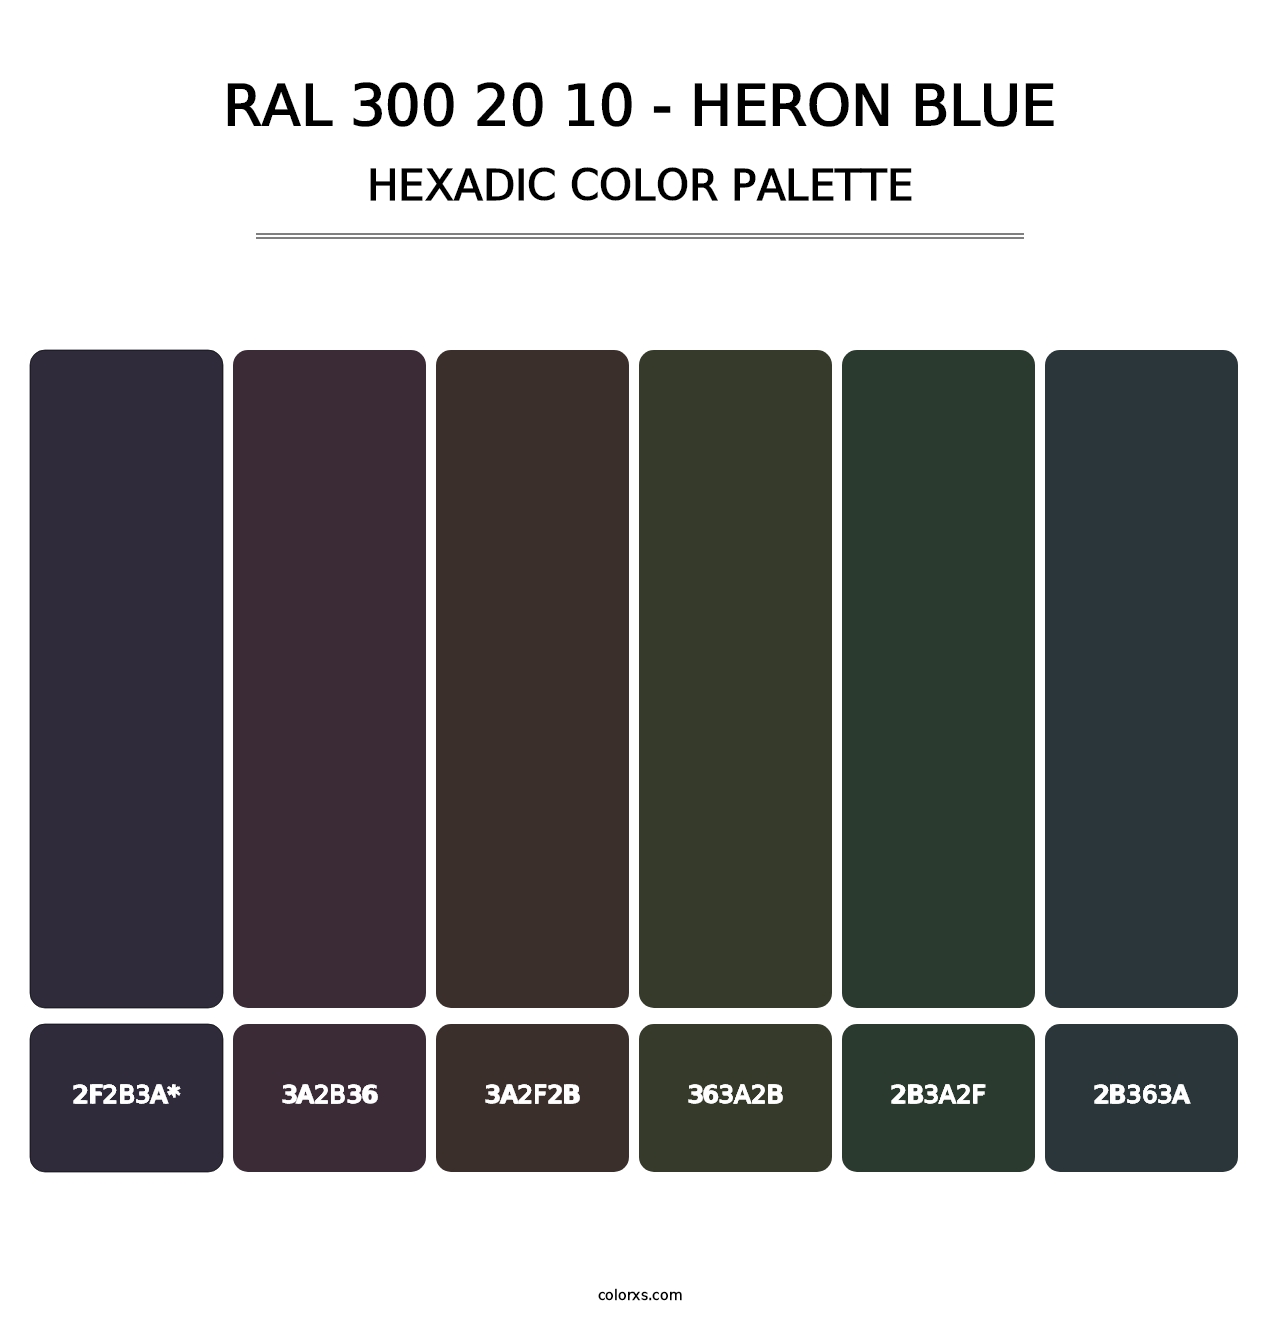 RAL 300 20 10 - Heron Blue - Hexadic Color Palette